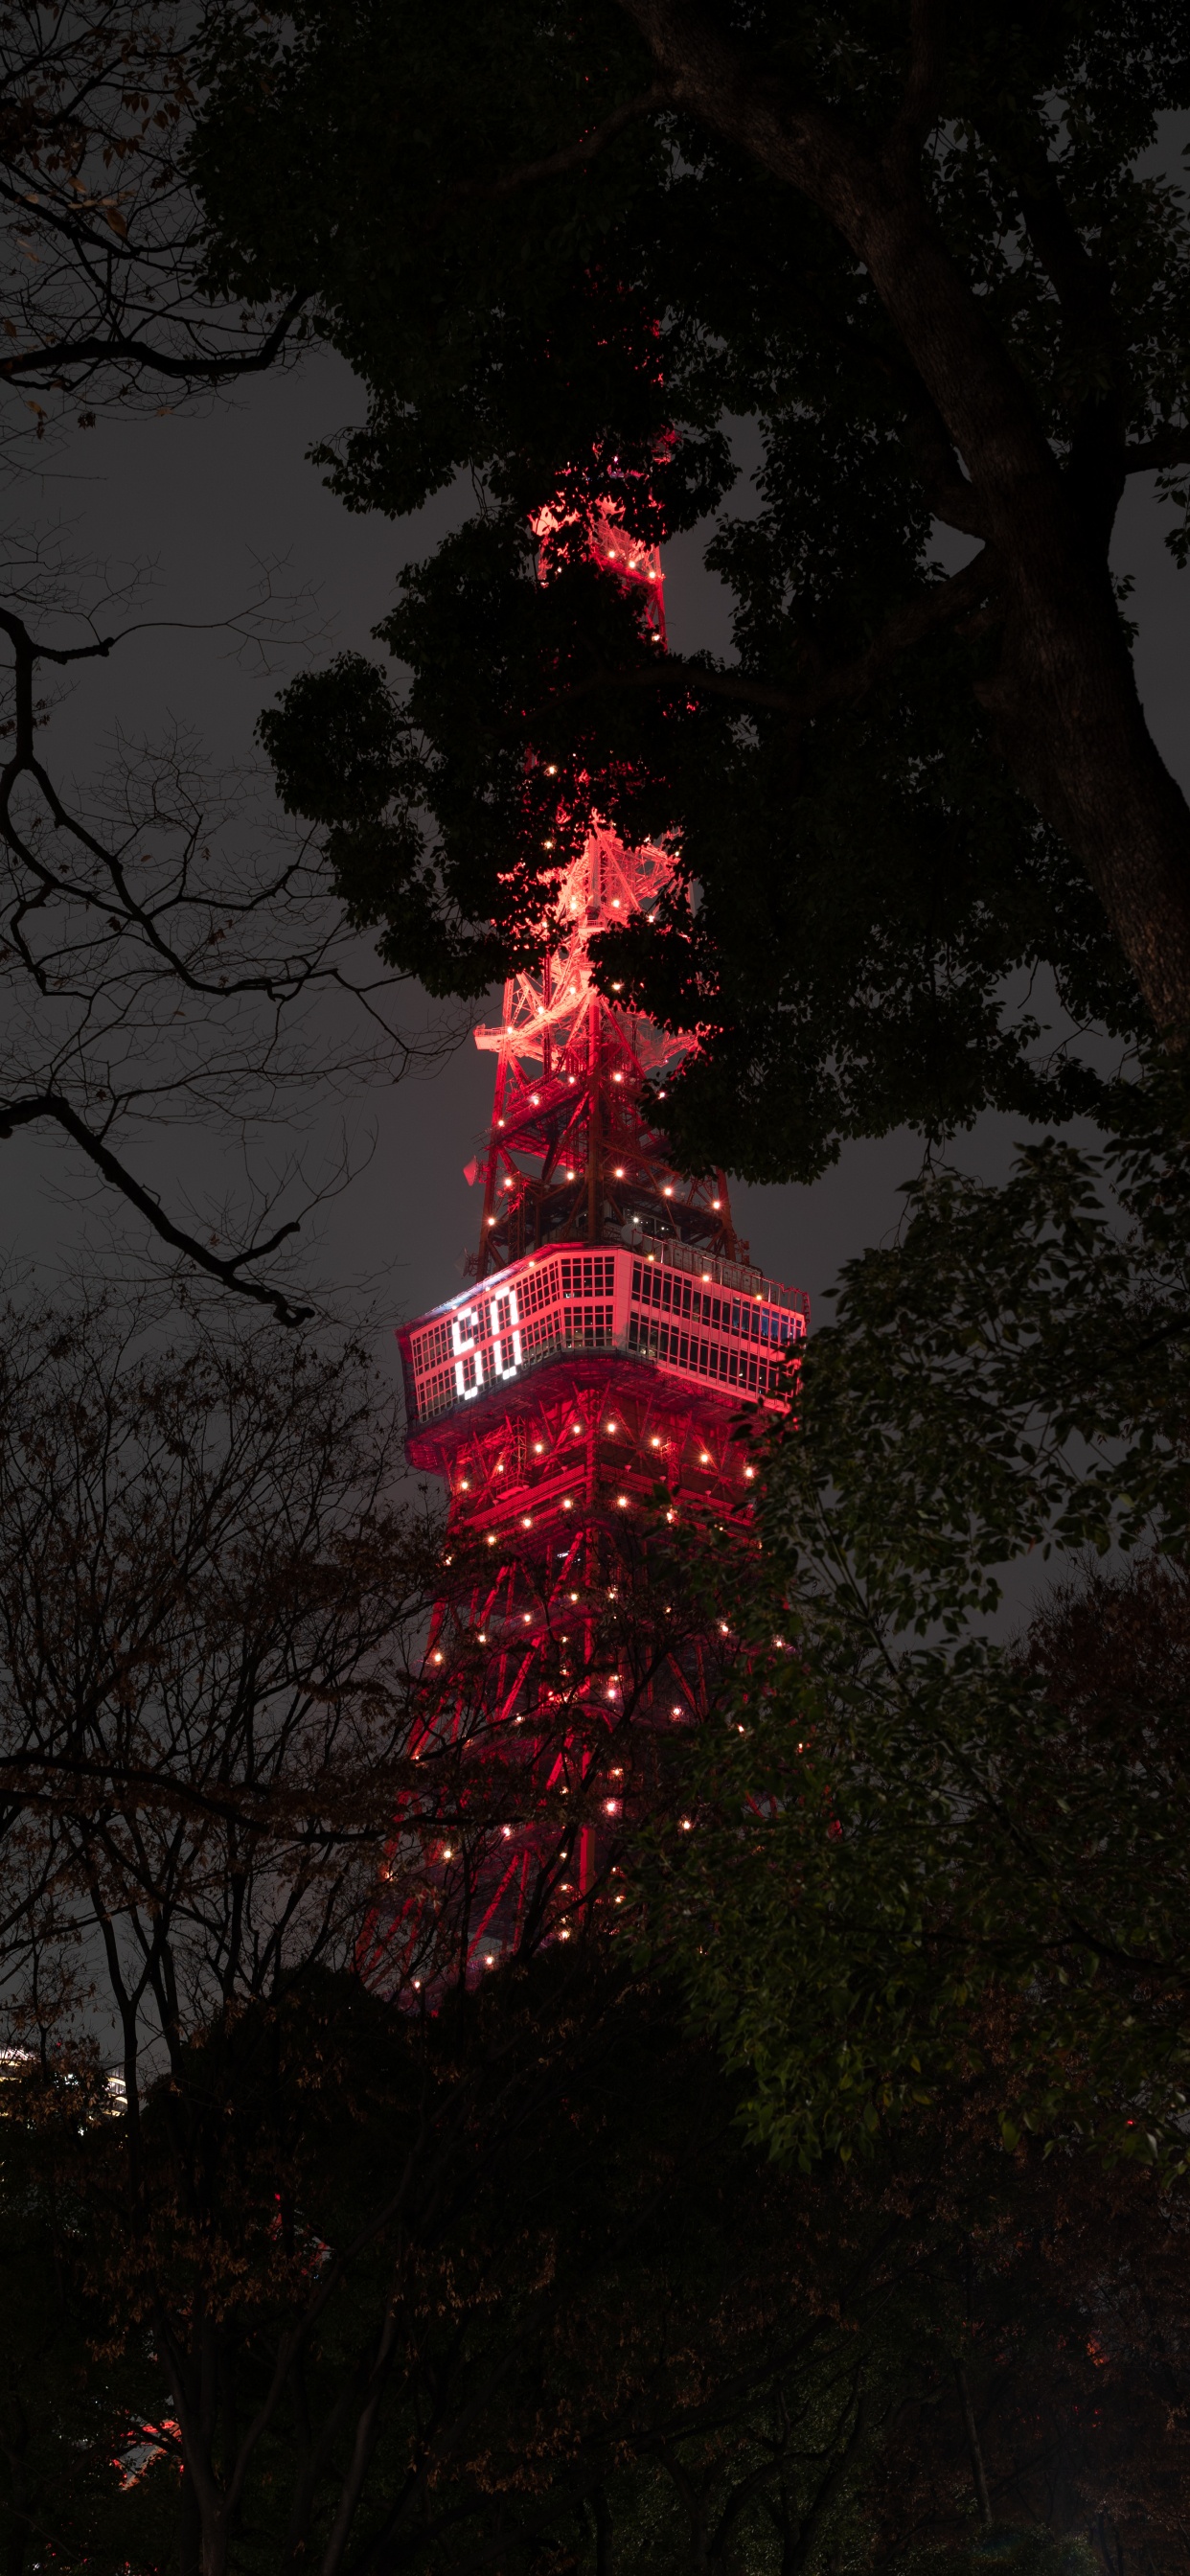 Rot-weißer Turm in Der Nähe Von Bäumen Während Der Nacht Night. Wallpaper in 1242x2688 Resolution